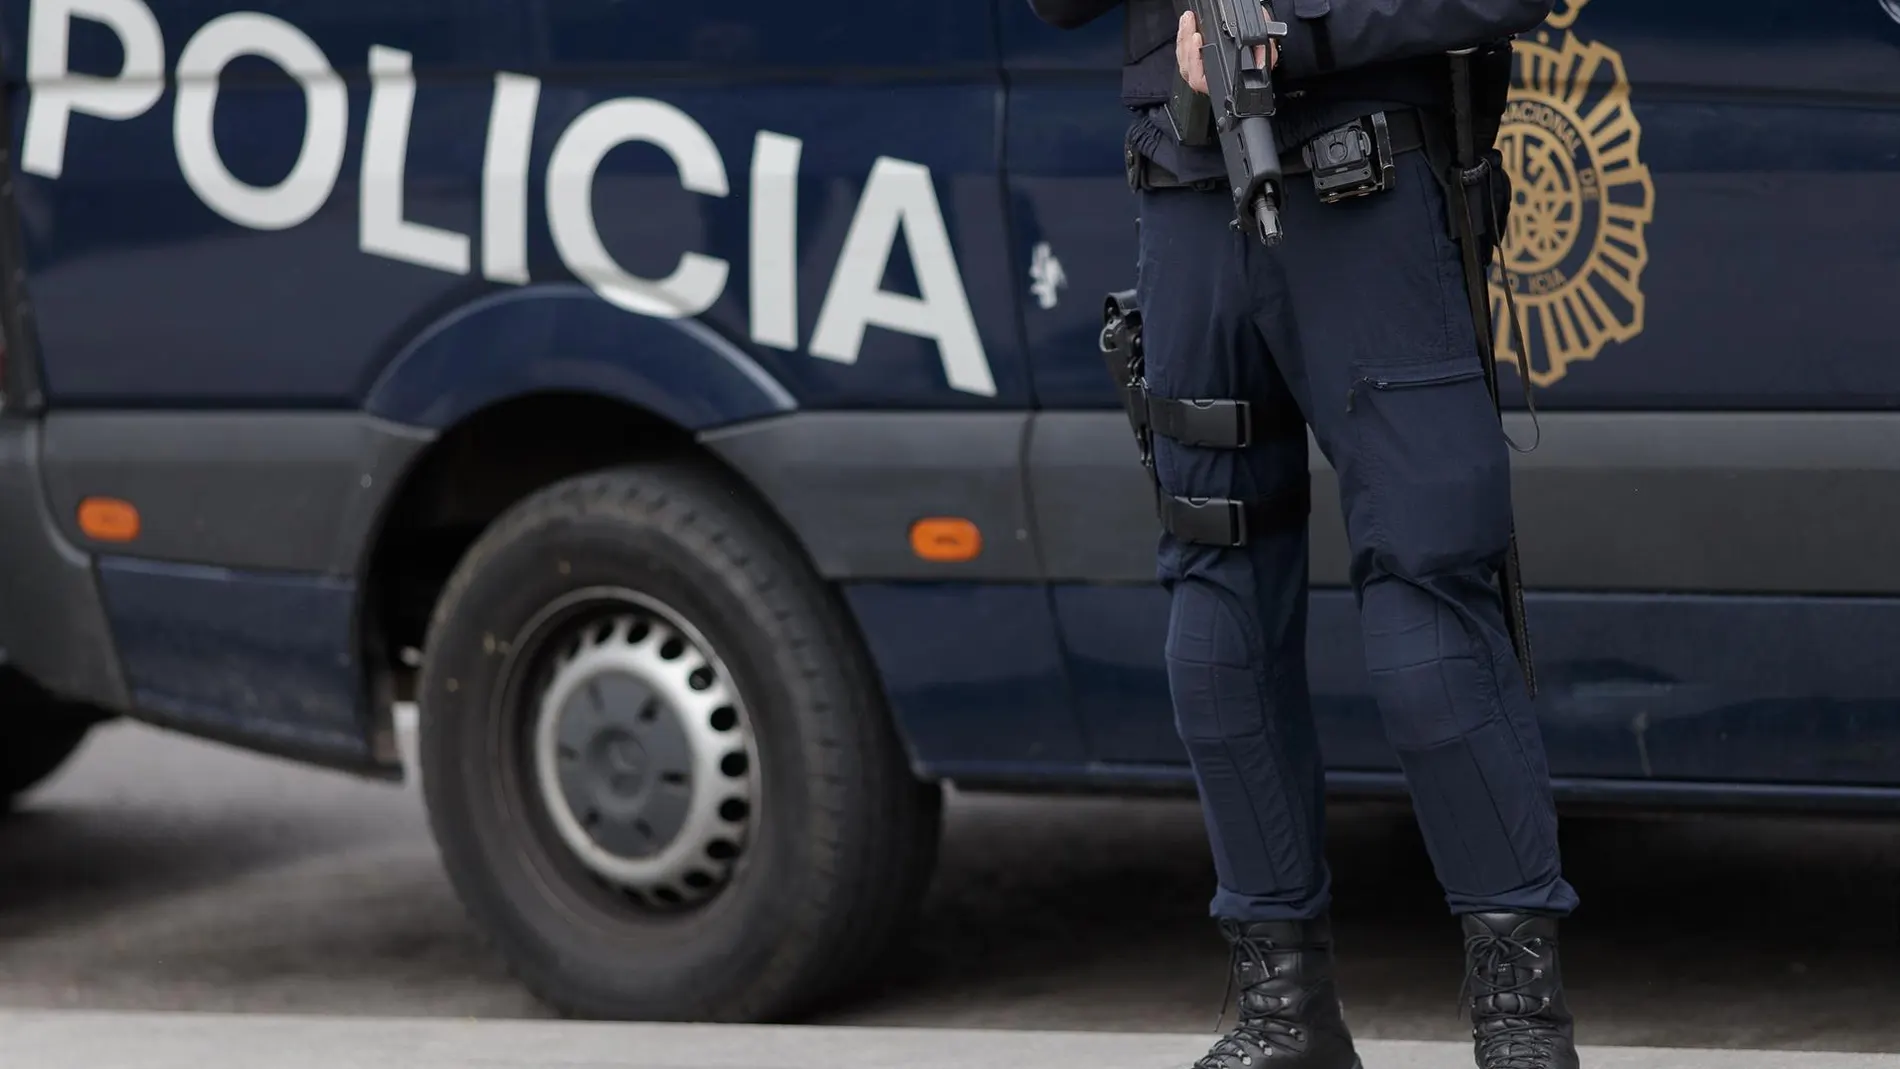 MADRID.-La Policía desaloja a los 'okupas' de una vivienda de una mujer de unos 80 años en Lavapiés